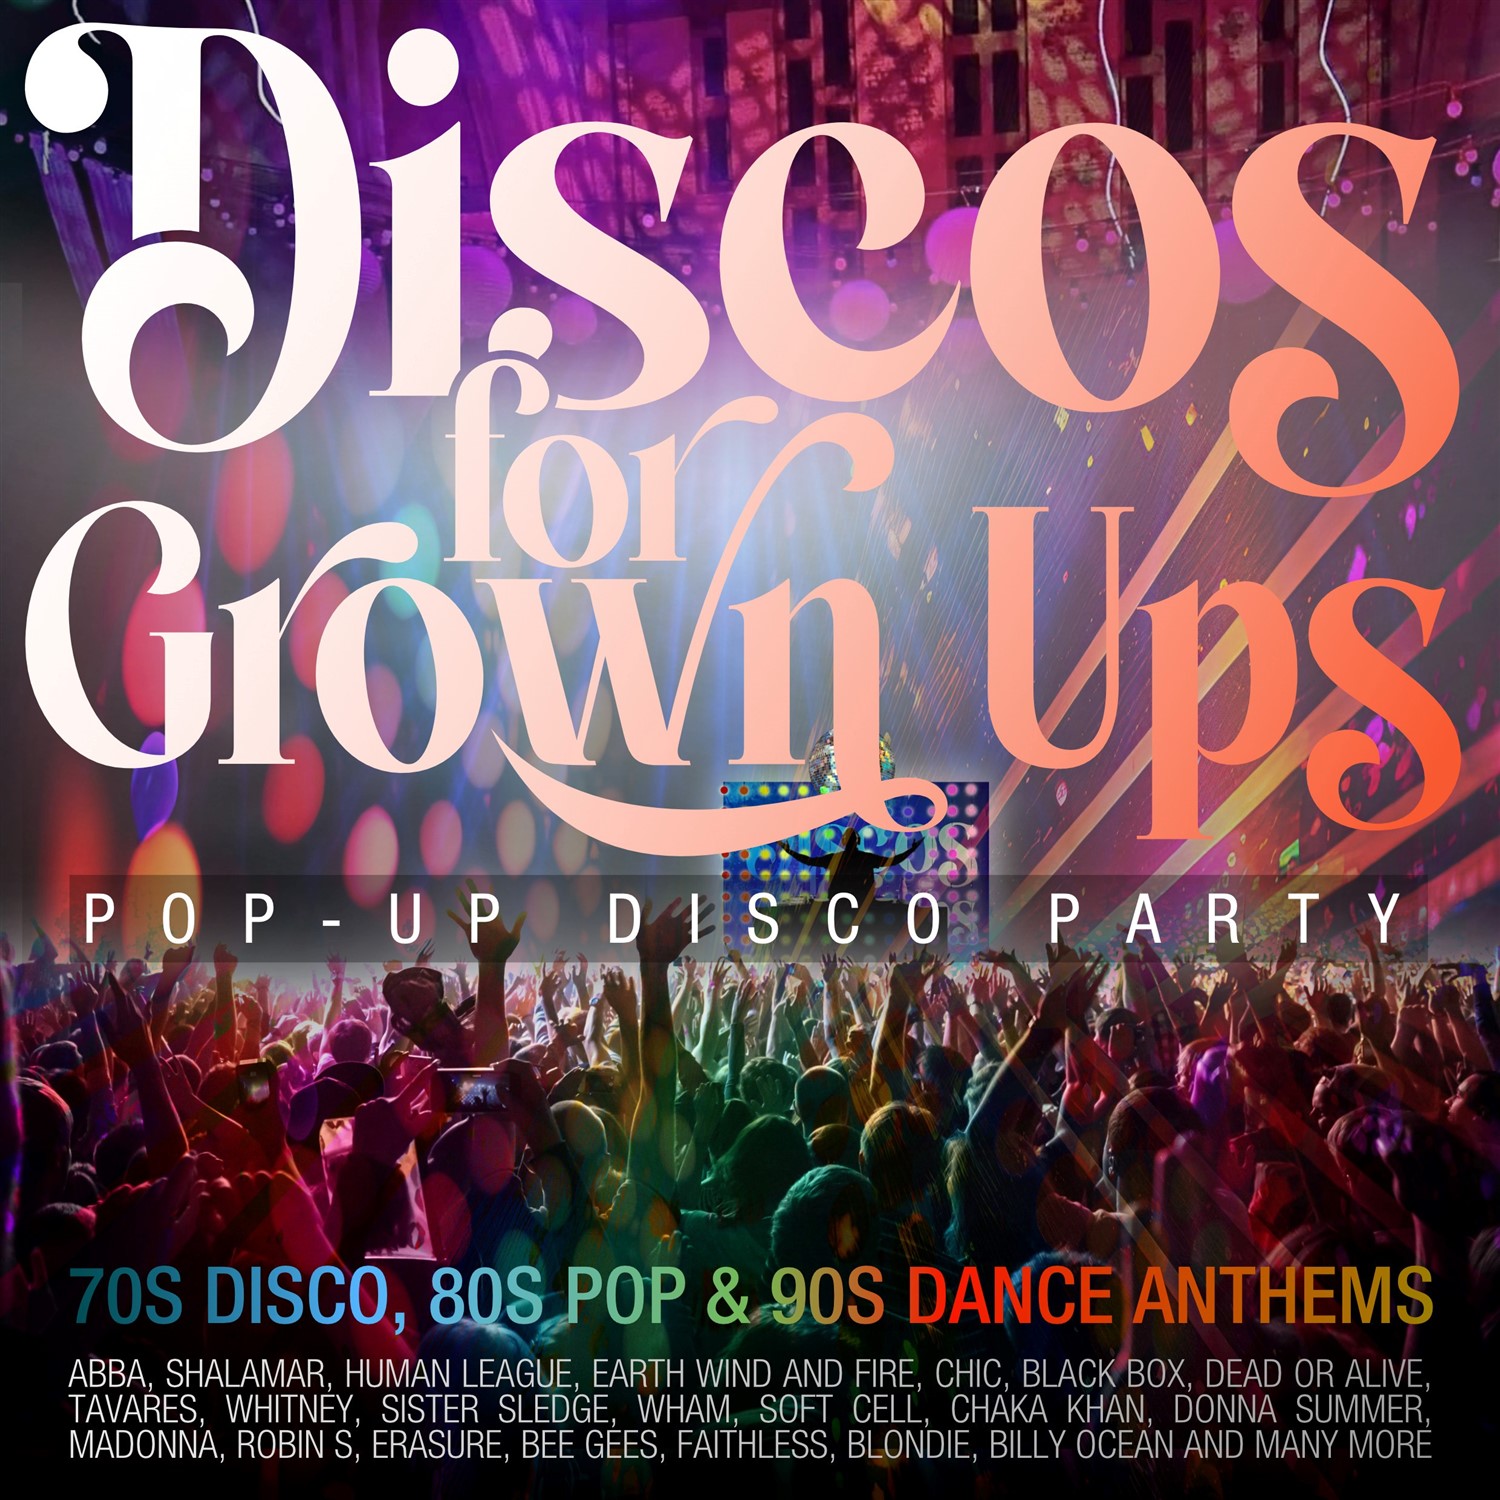 Discos for Grown Ups Pop-up Disco Party on mars 29, 20:00@Sutton Coldfield Town Hall - General Admission - Achetez des billets et obtenez des informations surSutton Coldfield Town Hall 